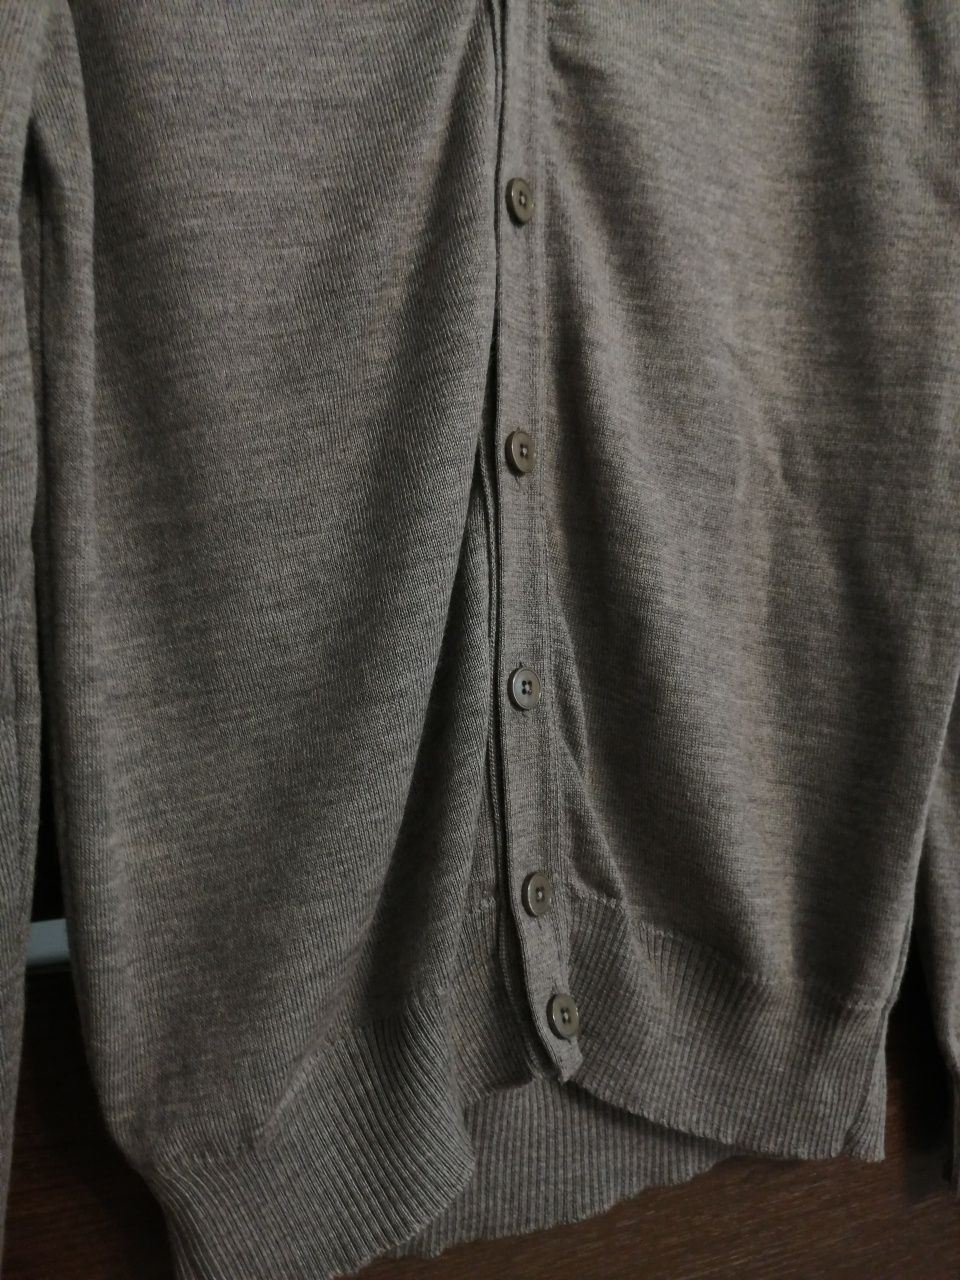 Szary wełniany rozpinany kardigan męski sweter wełna merino rozmiar S